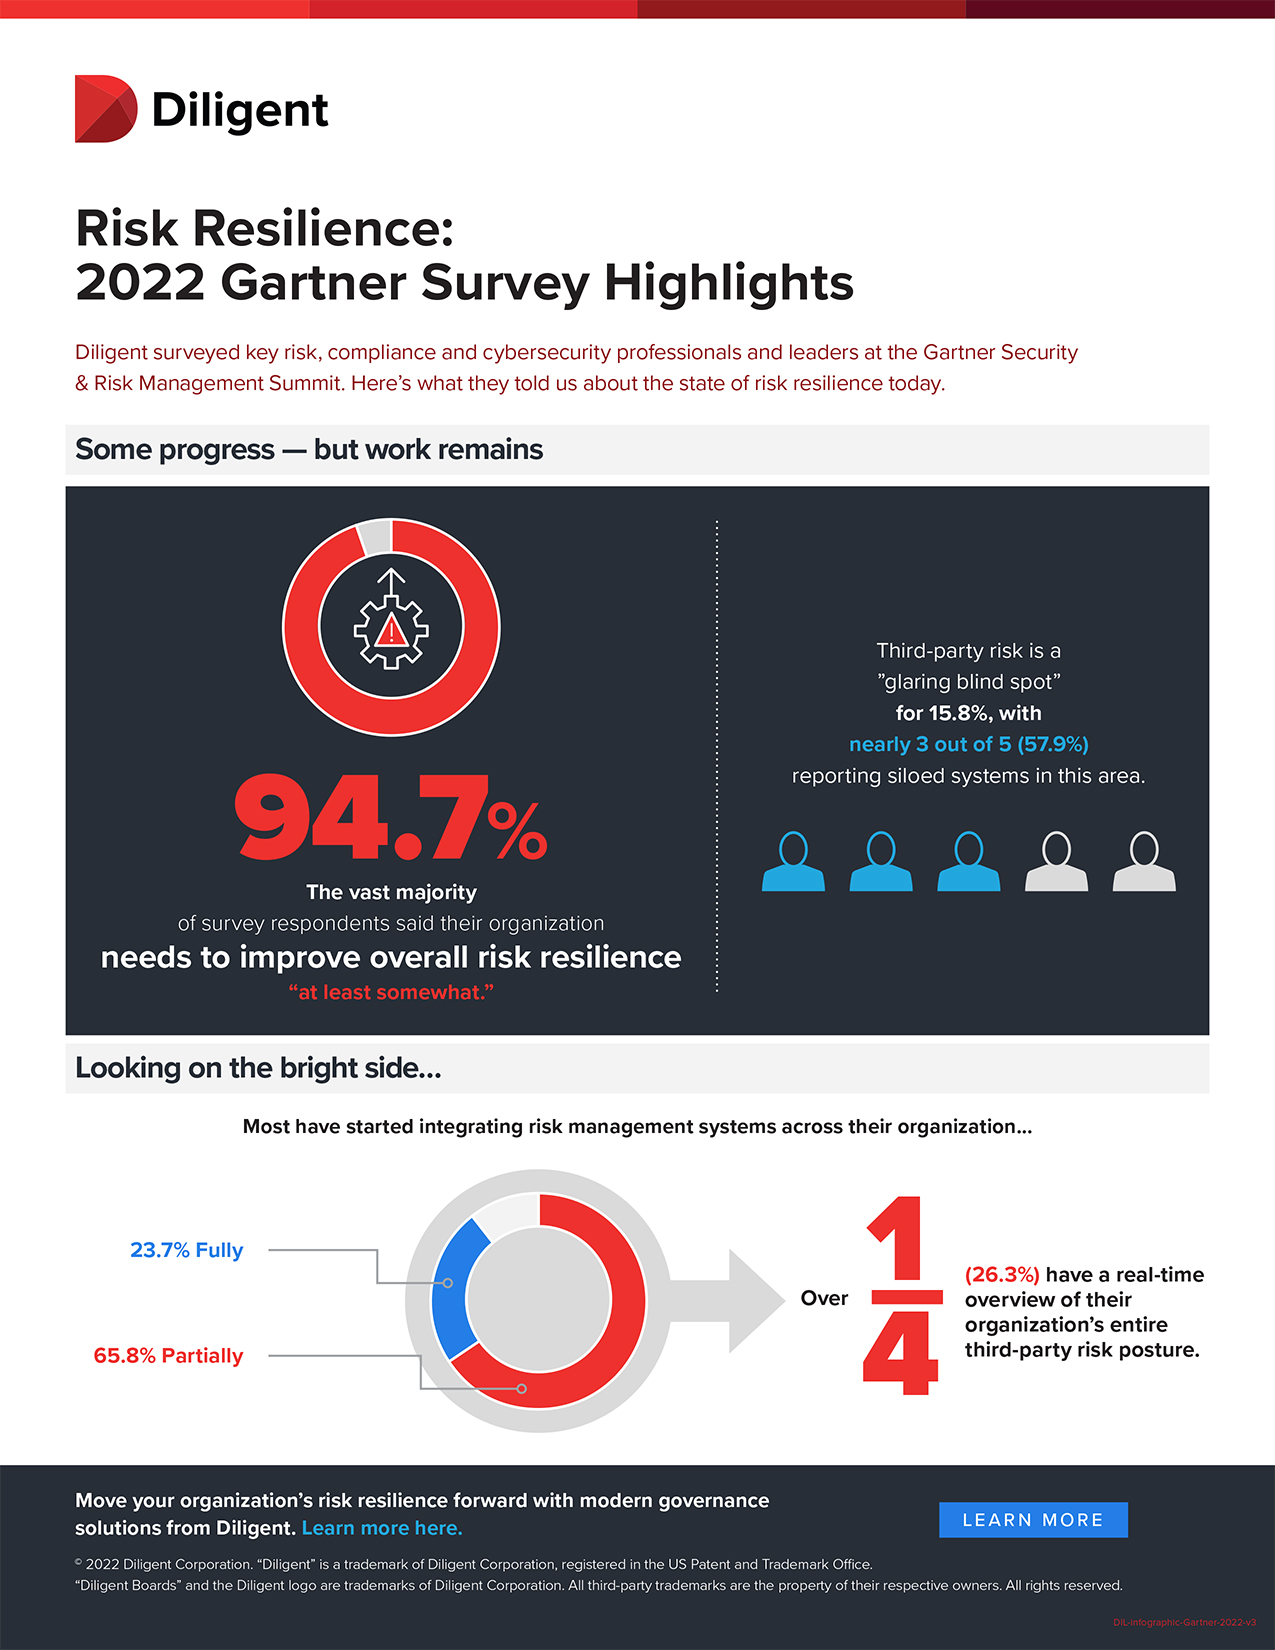 Risk resilience - Gartner Survey Highlights